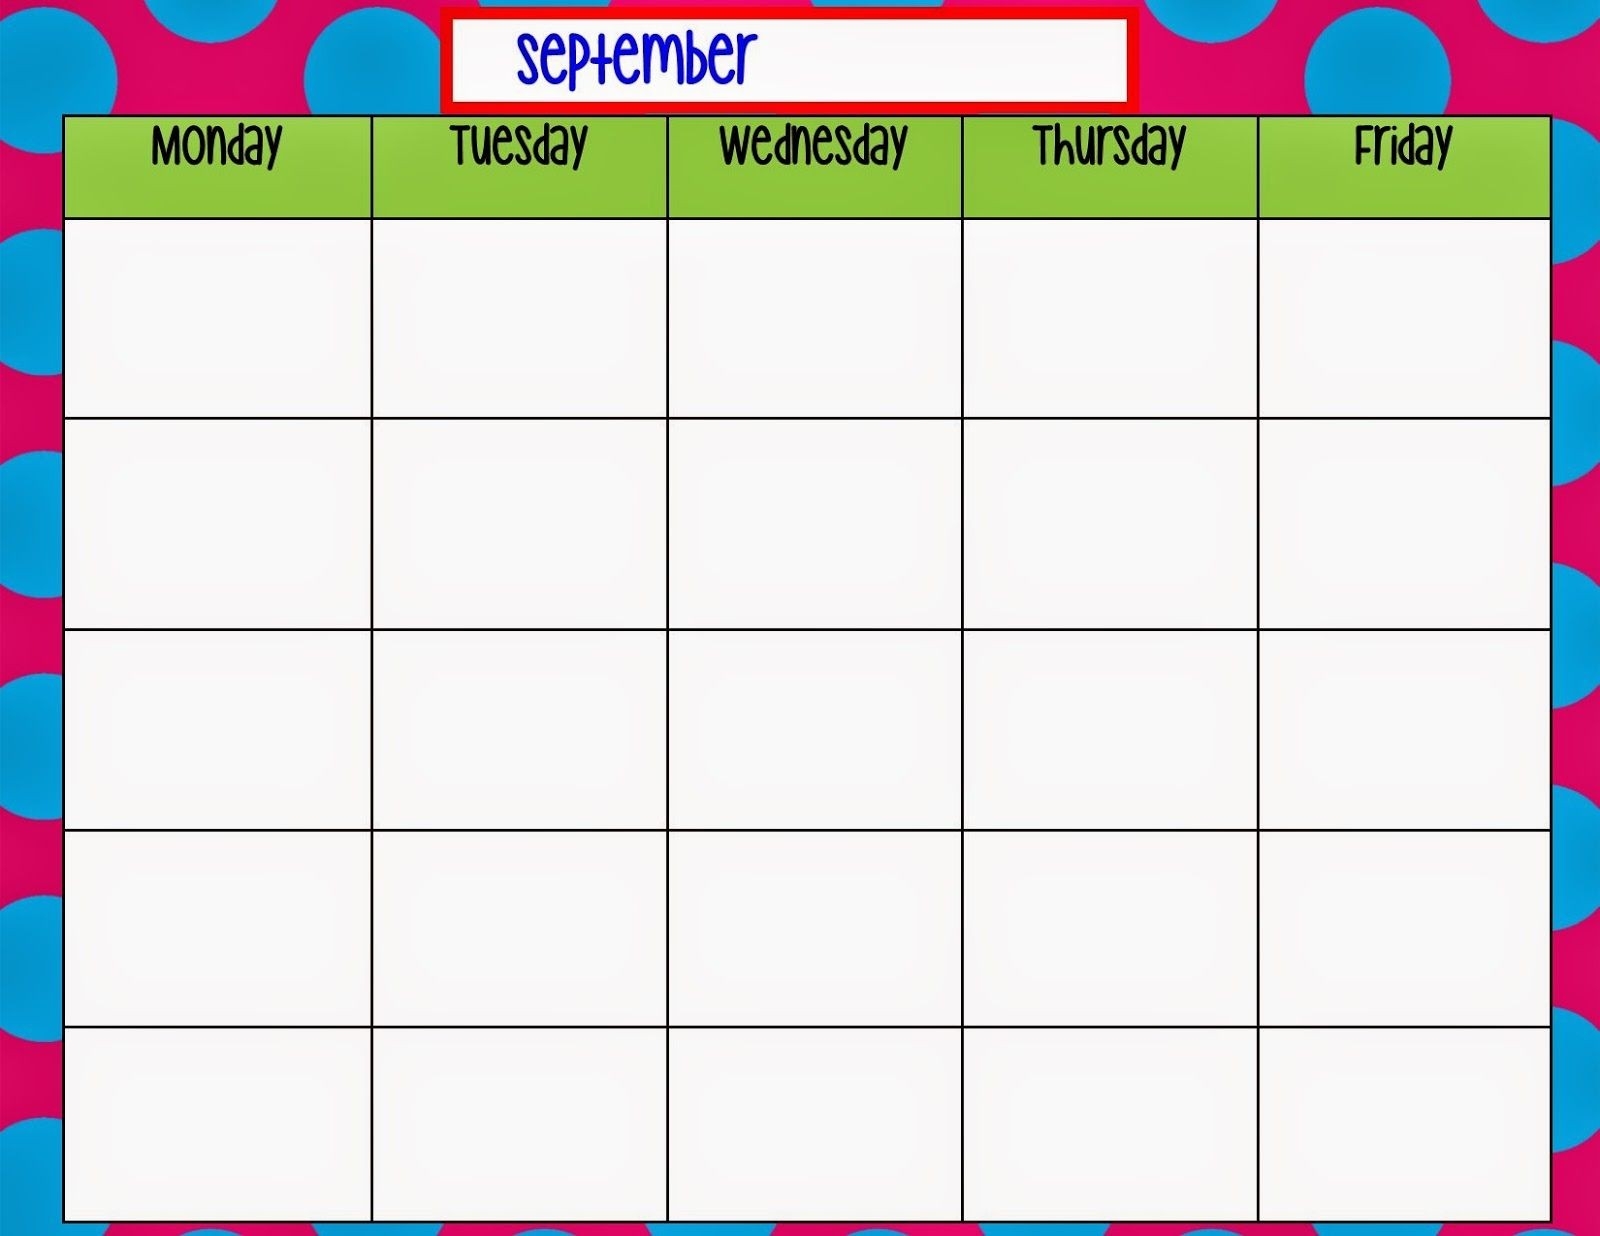 Monday Through Friday Calendar Template | Preschool | Weekly-Blank Monday-Friday Calendar Templates